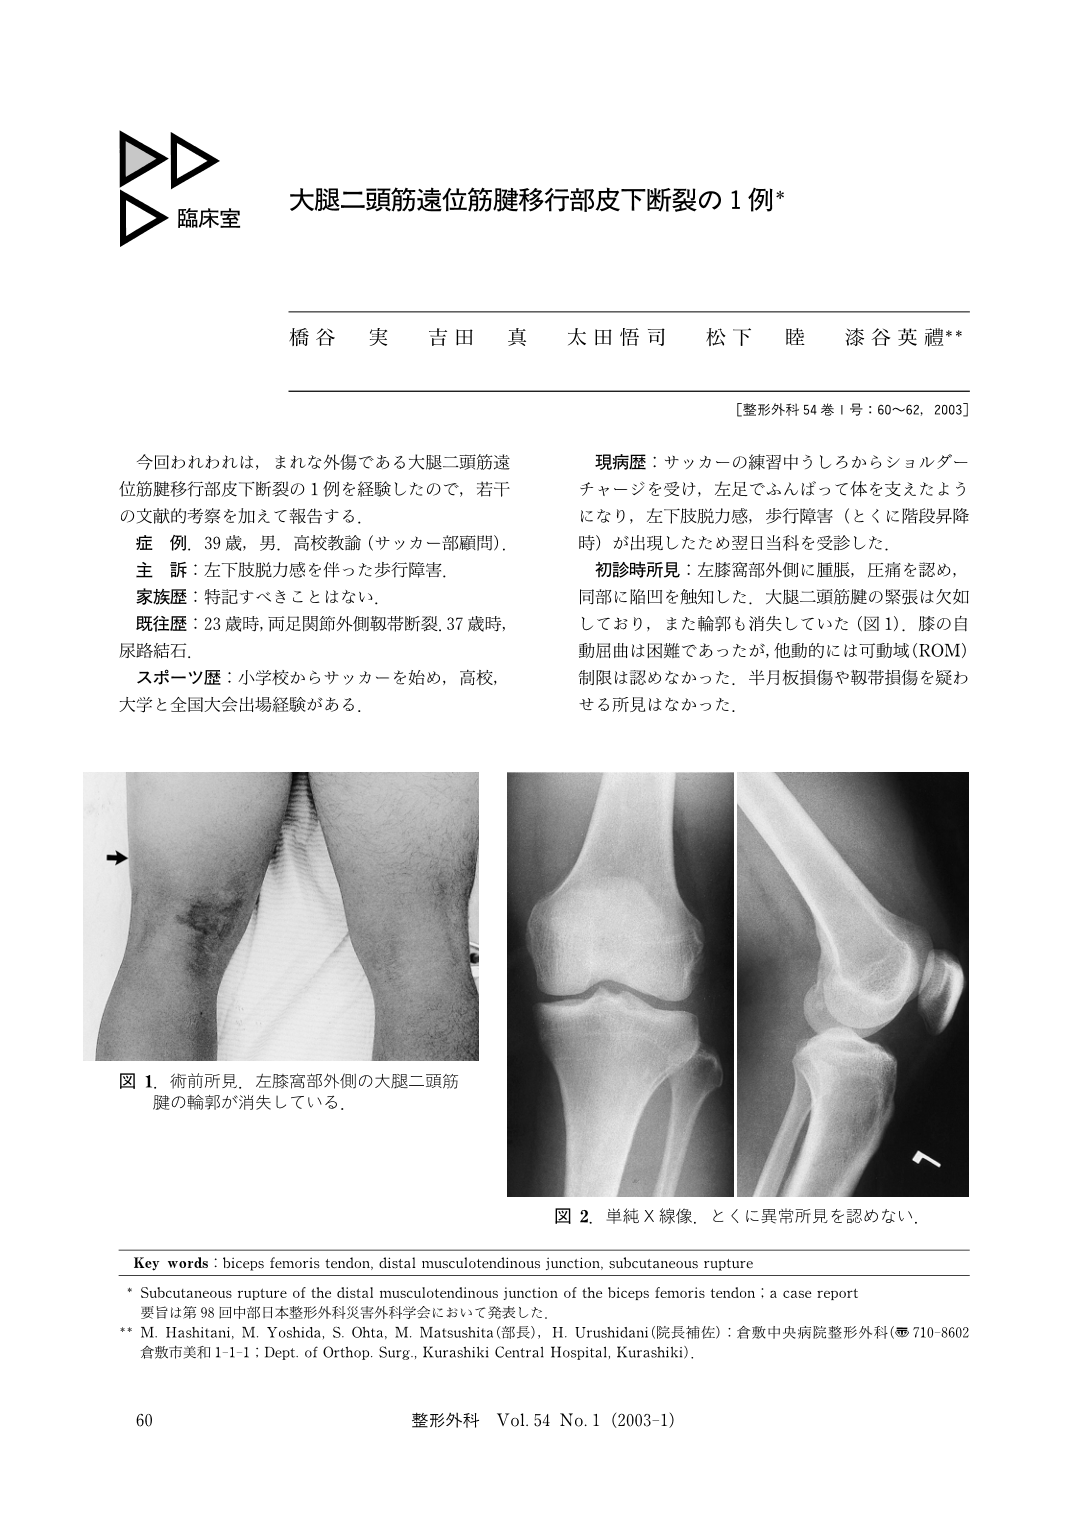 大腿二頭筋遠位筋腱移行部皮下断裂の1例 臨床雑誌整形外科 54巻1号 医書 Jp